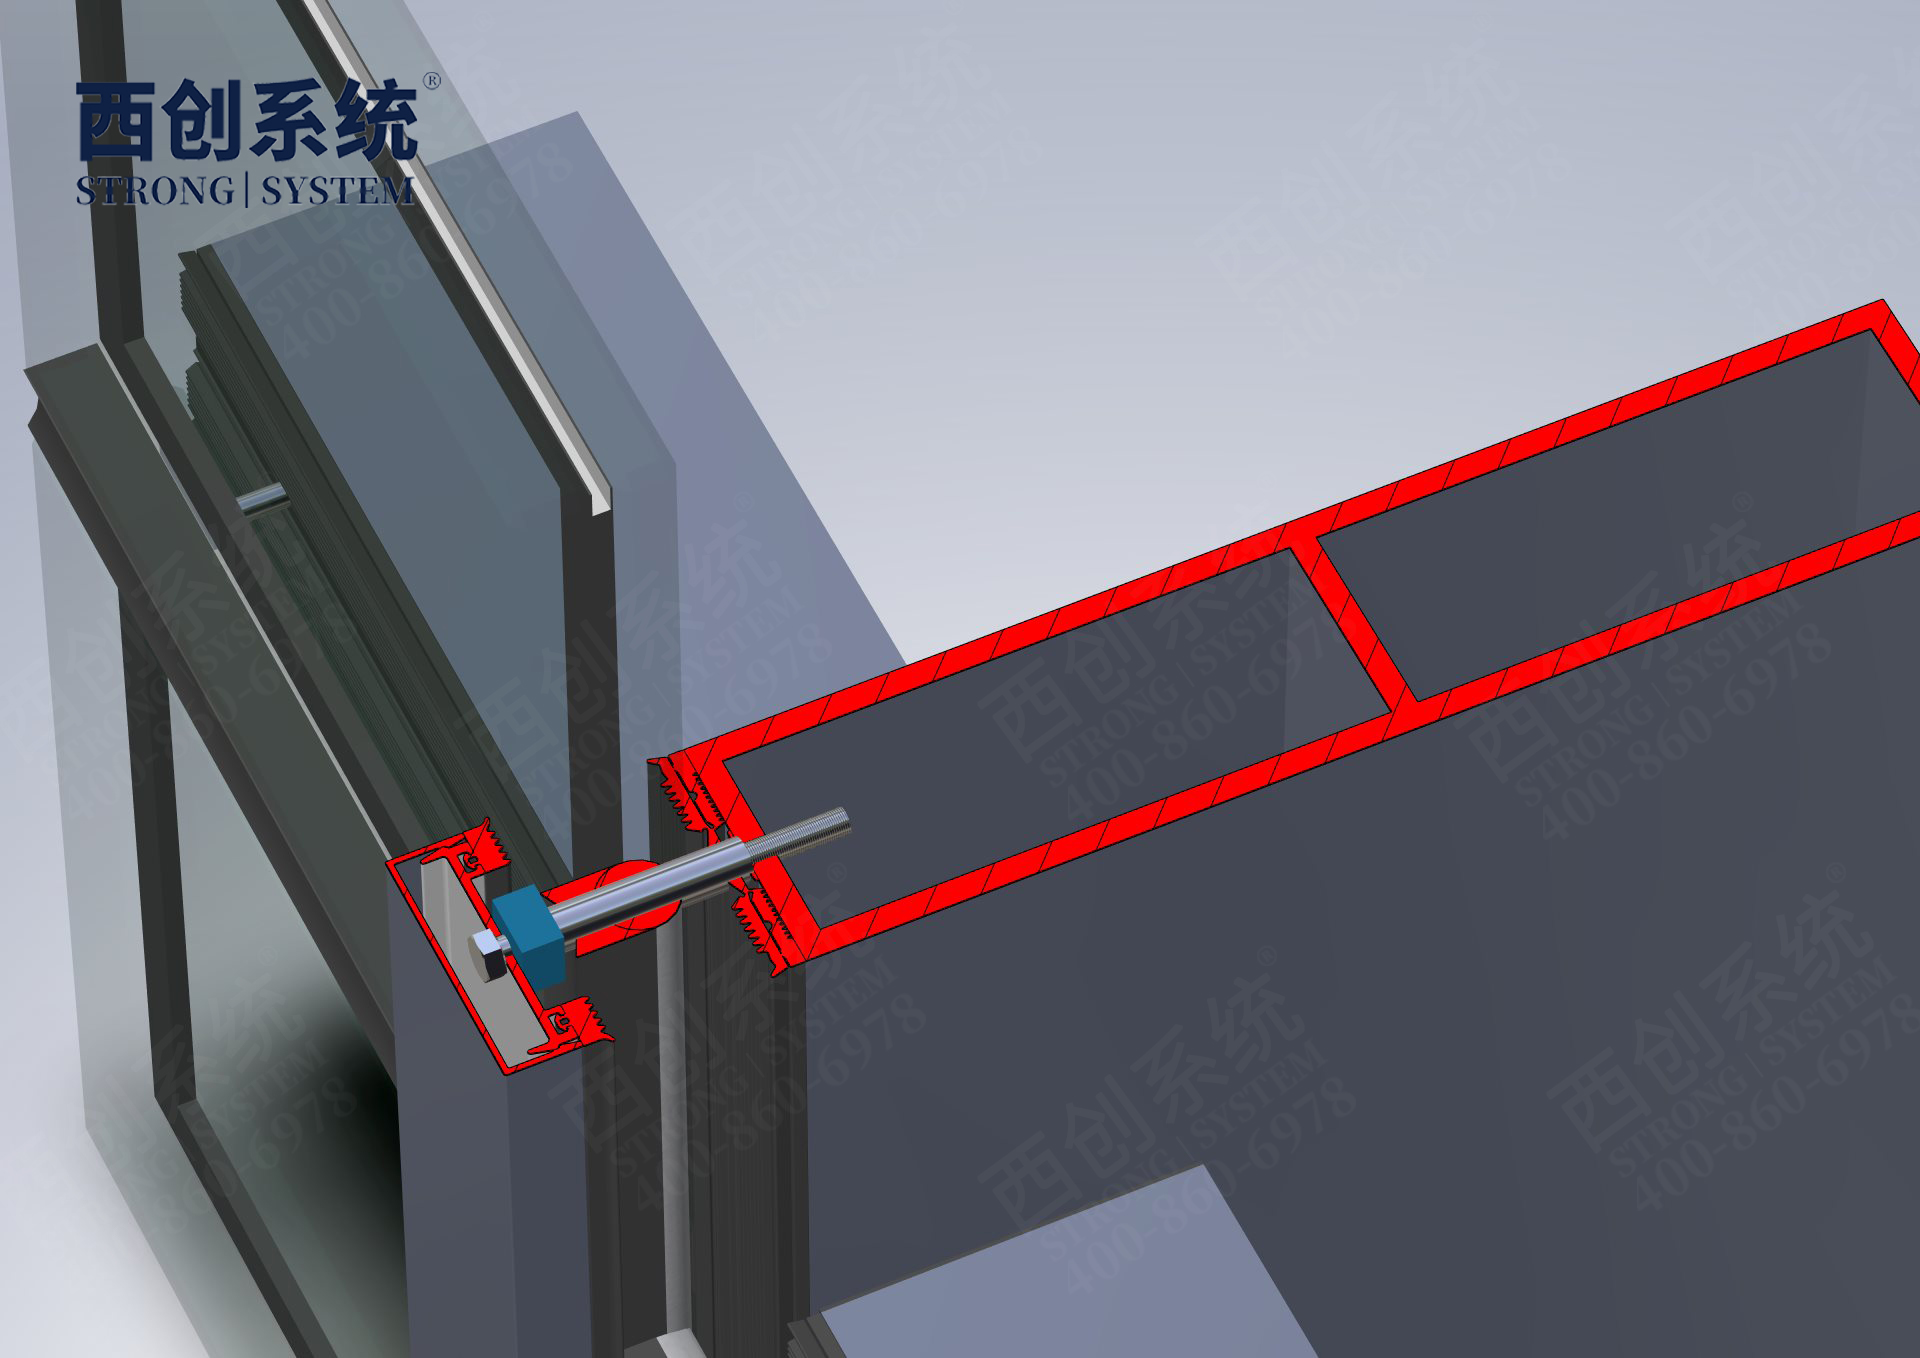 可祺时装三期工程日型&矩形精制钢幕墙系统 - 西创系统(图14)